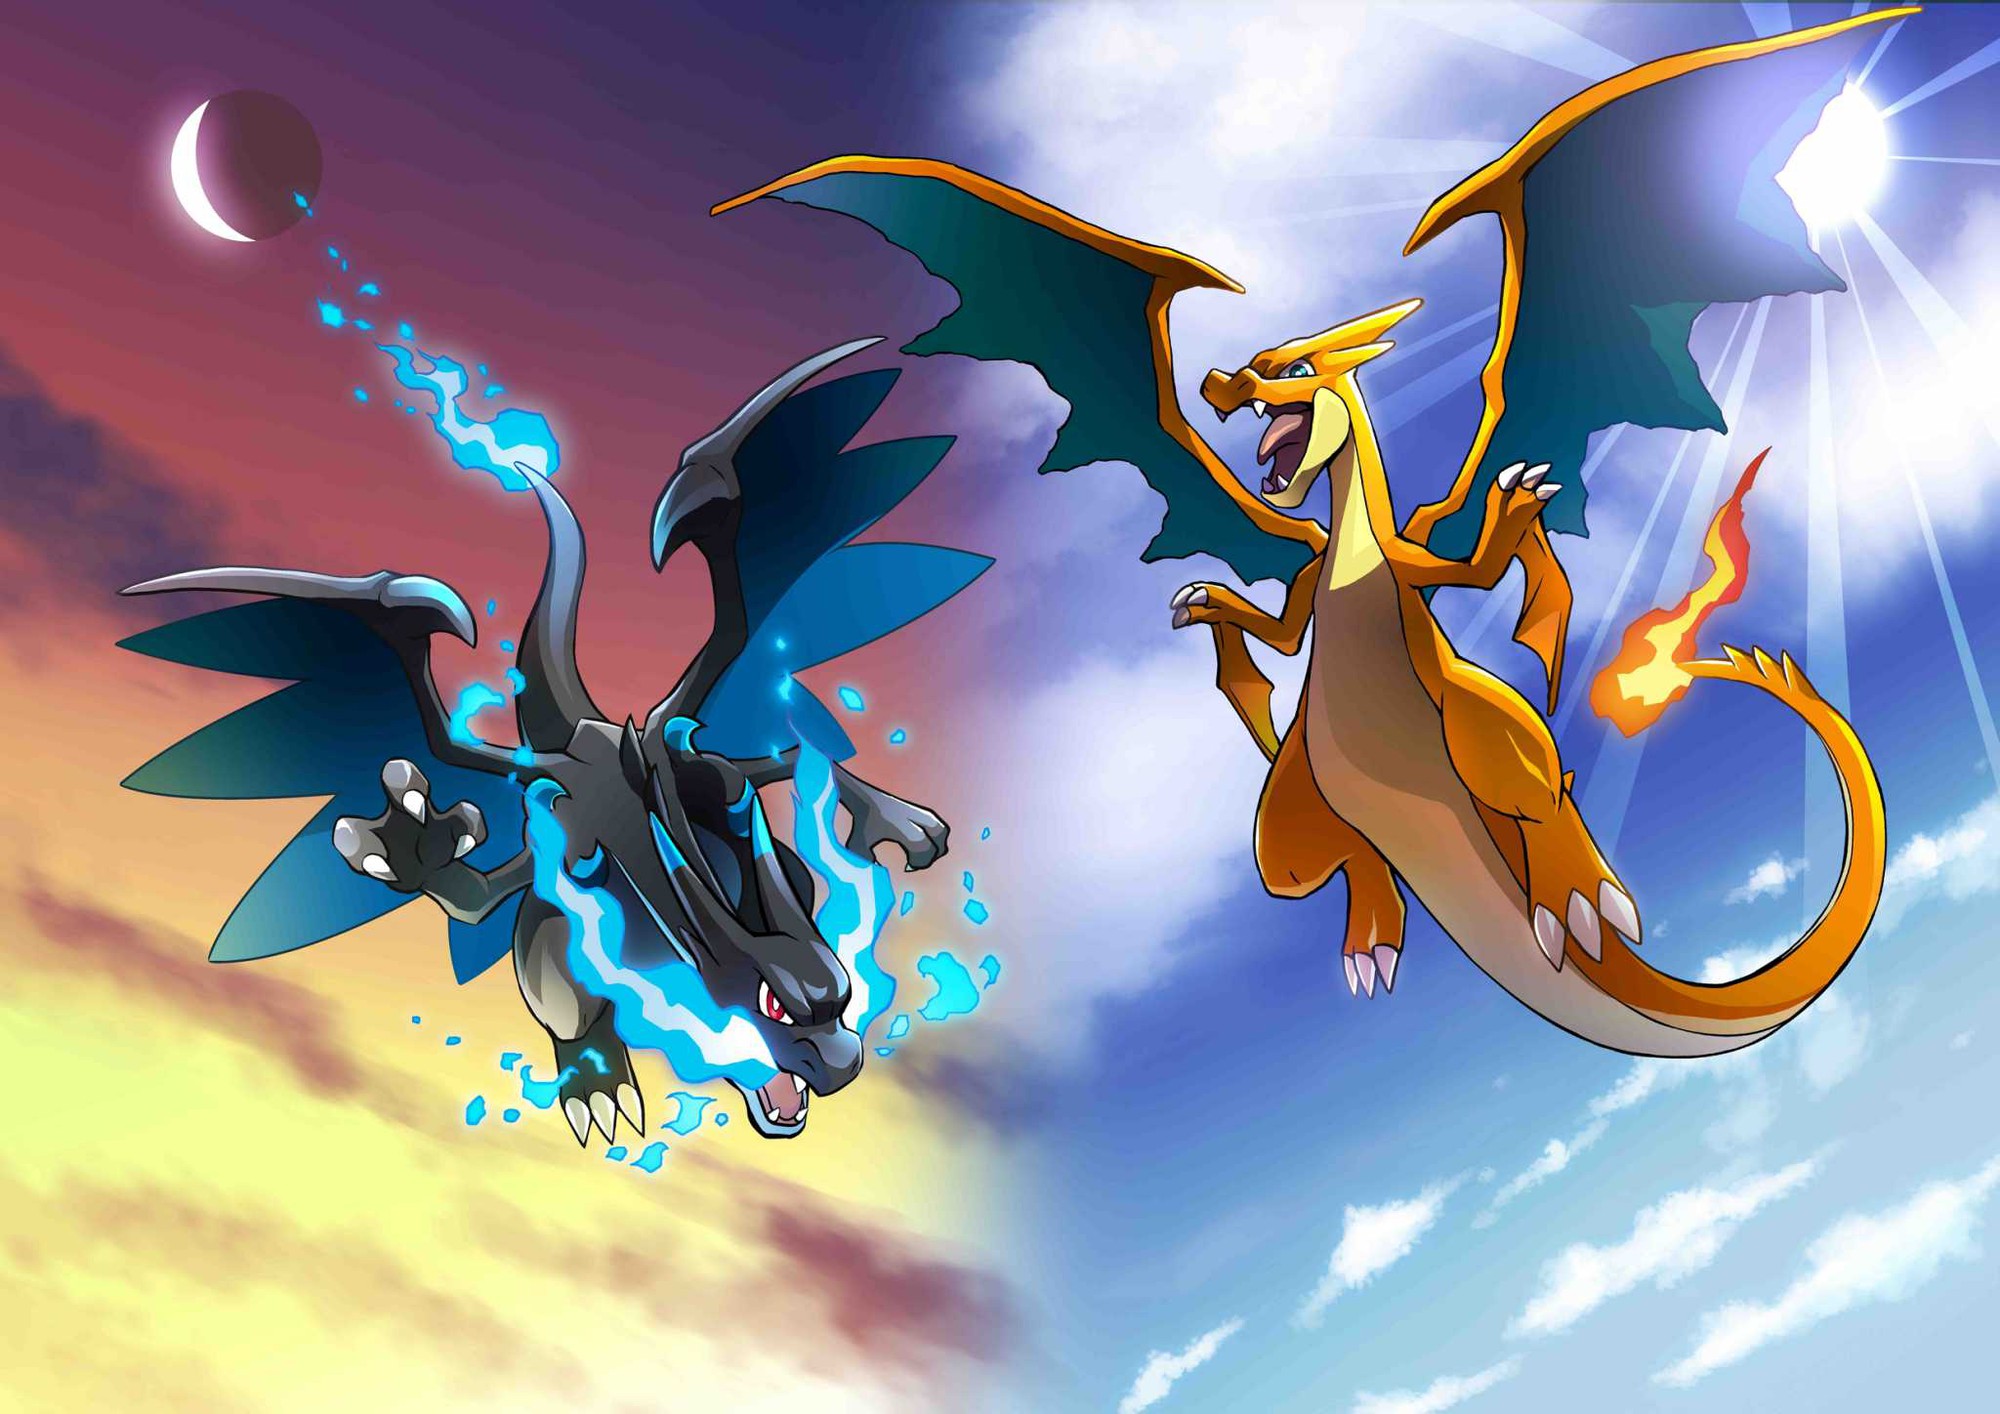 Tiến hóa Mega: Thế giới Pokémon luôn chứa đầy những bí ẩn và tiến hóa Mega là một trong những điều đó. Khi một Pokémon tiến hóa thành Mega, chúng sẽ trở nên mạnh mẽ hơn và có thể học các động tác tuyệt vời hơn. Hãy xem hình ảnh liên quan để khám phá thêm về tiến hóa Mega.